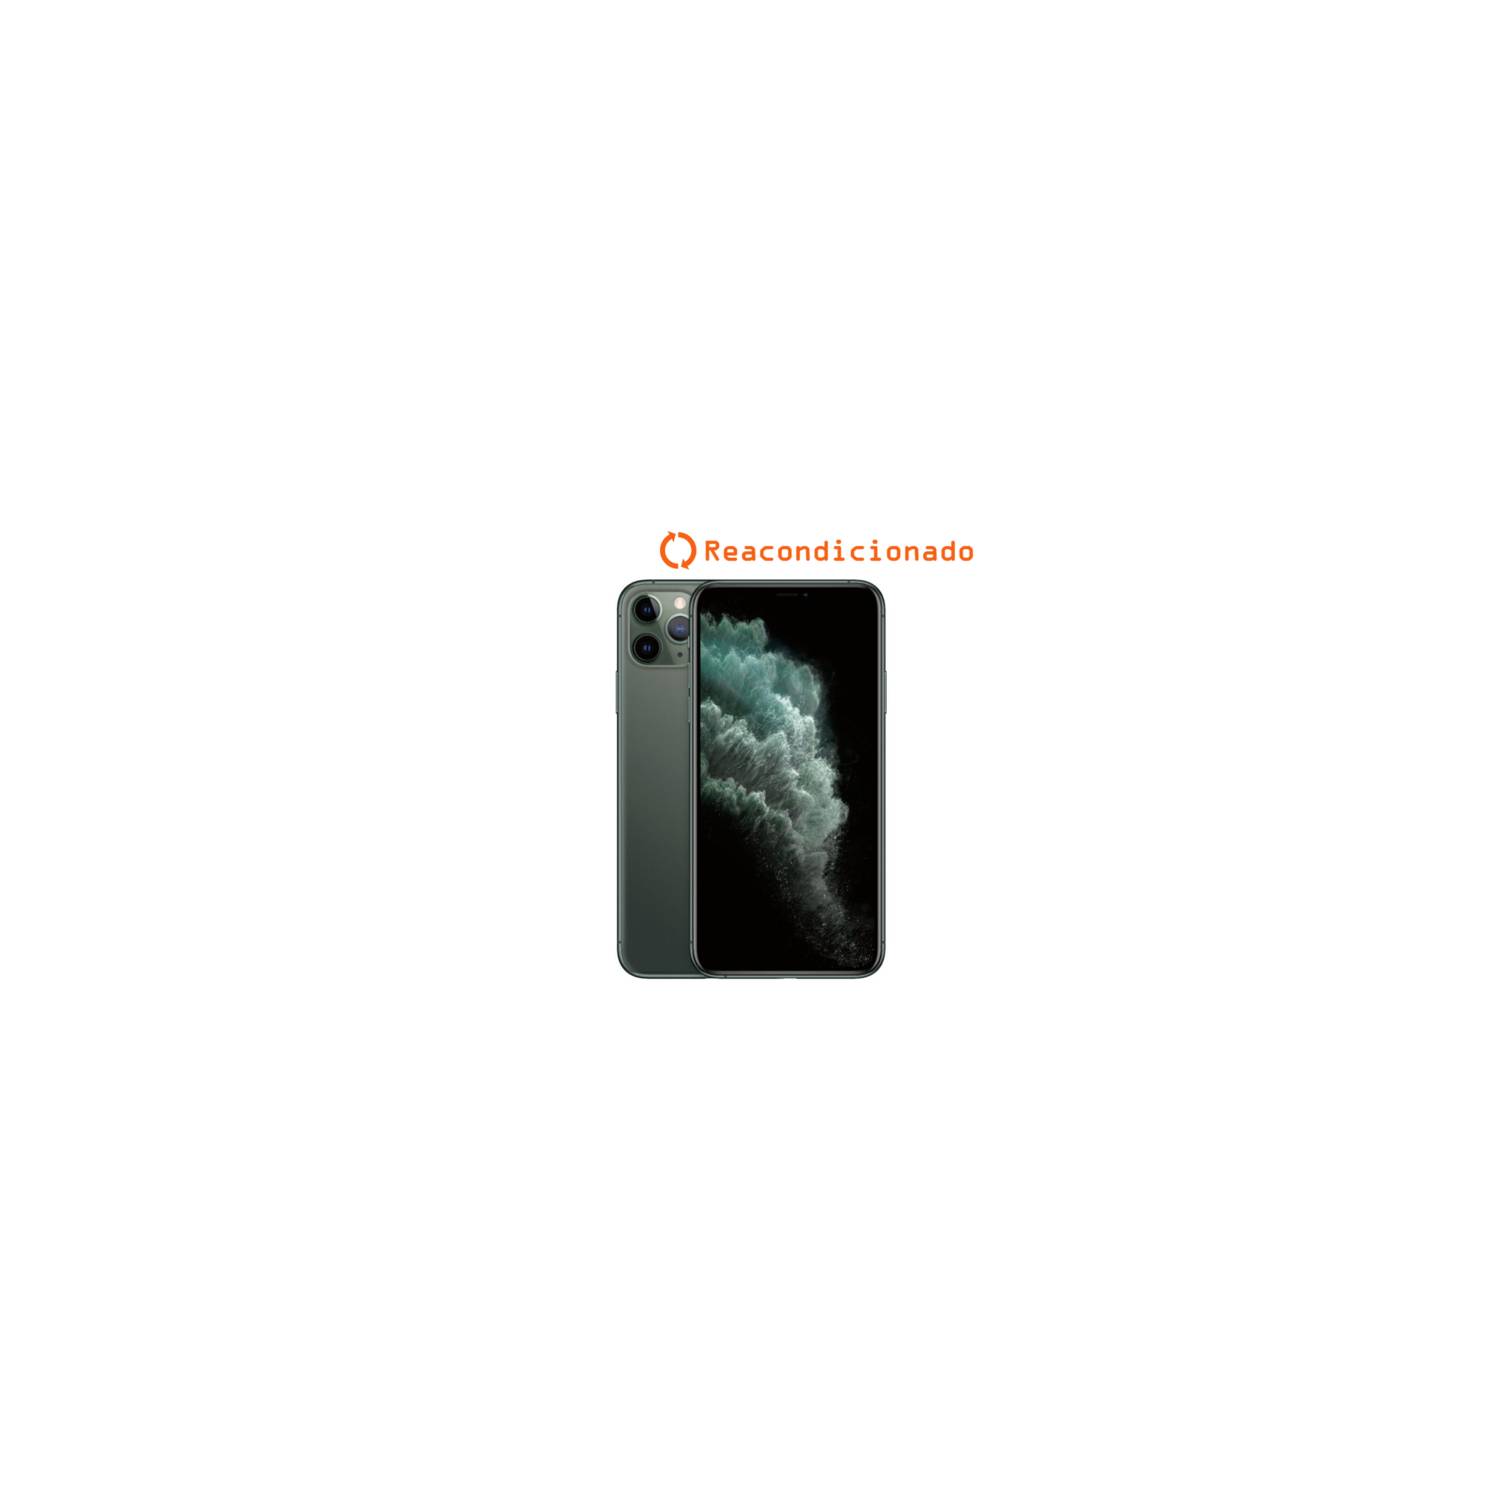 iPhone 11 Pro Max 256GB Verde Medianoche - Reacondicionado APPLE